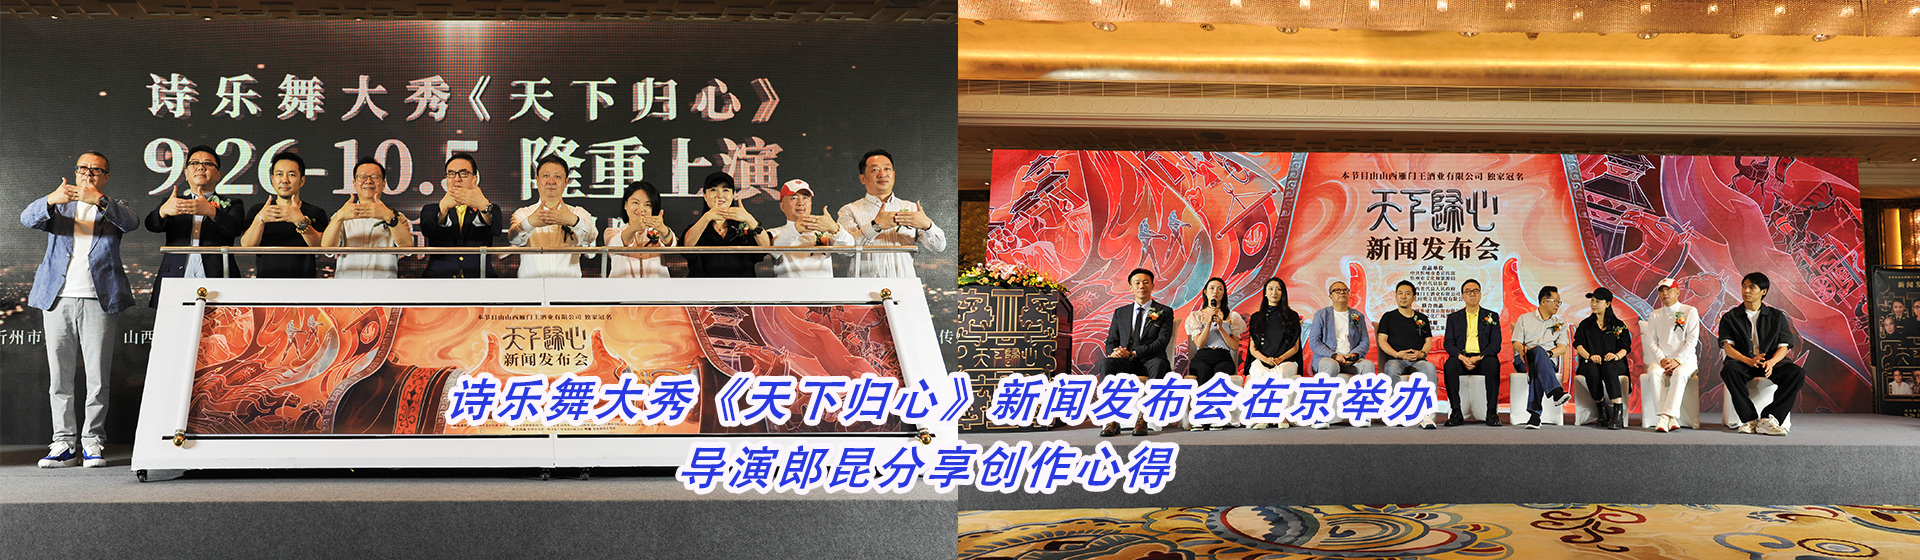 诗乐舞大秀《天下归心》新闻发布会在京举办 导演郎昆分享创作心得